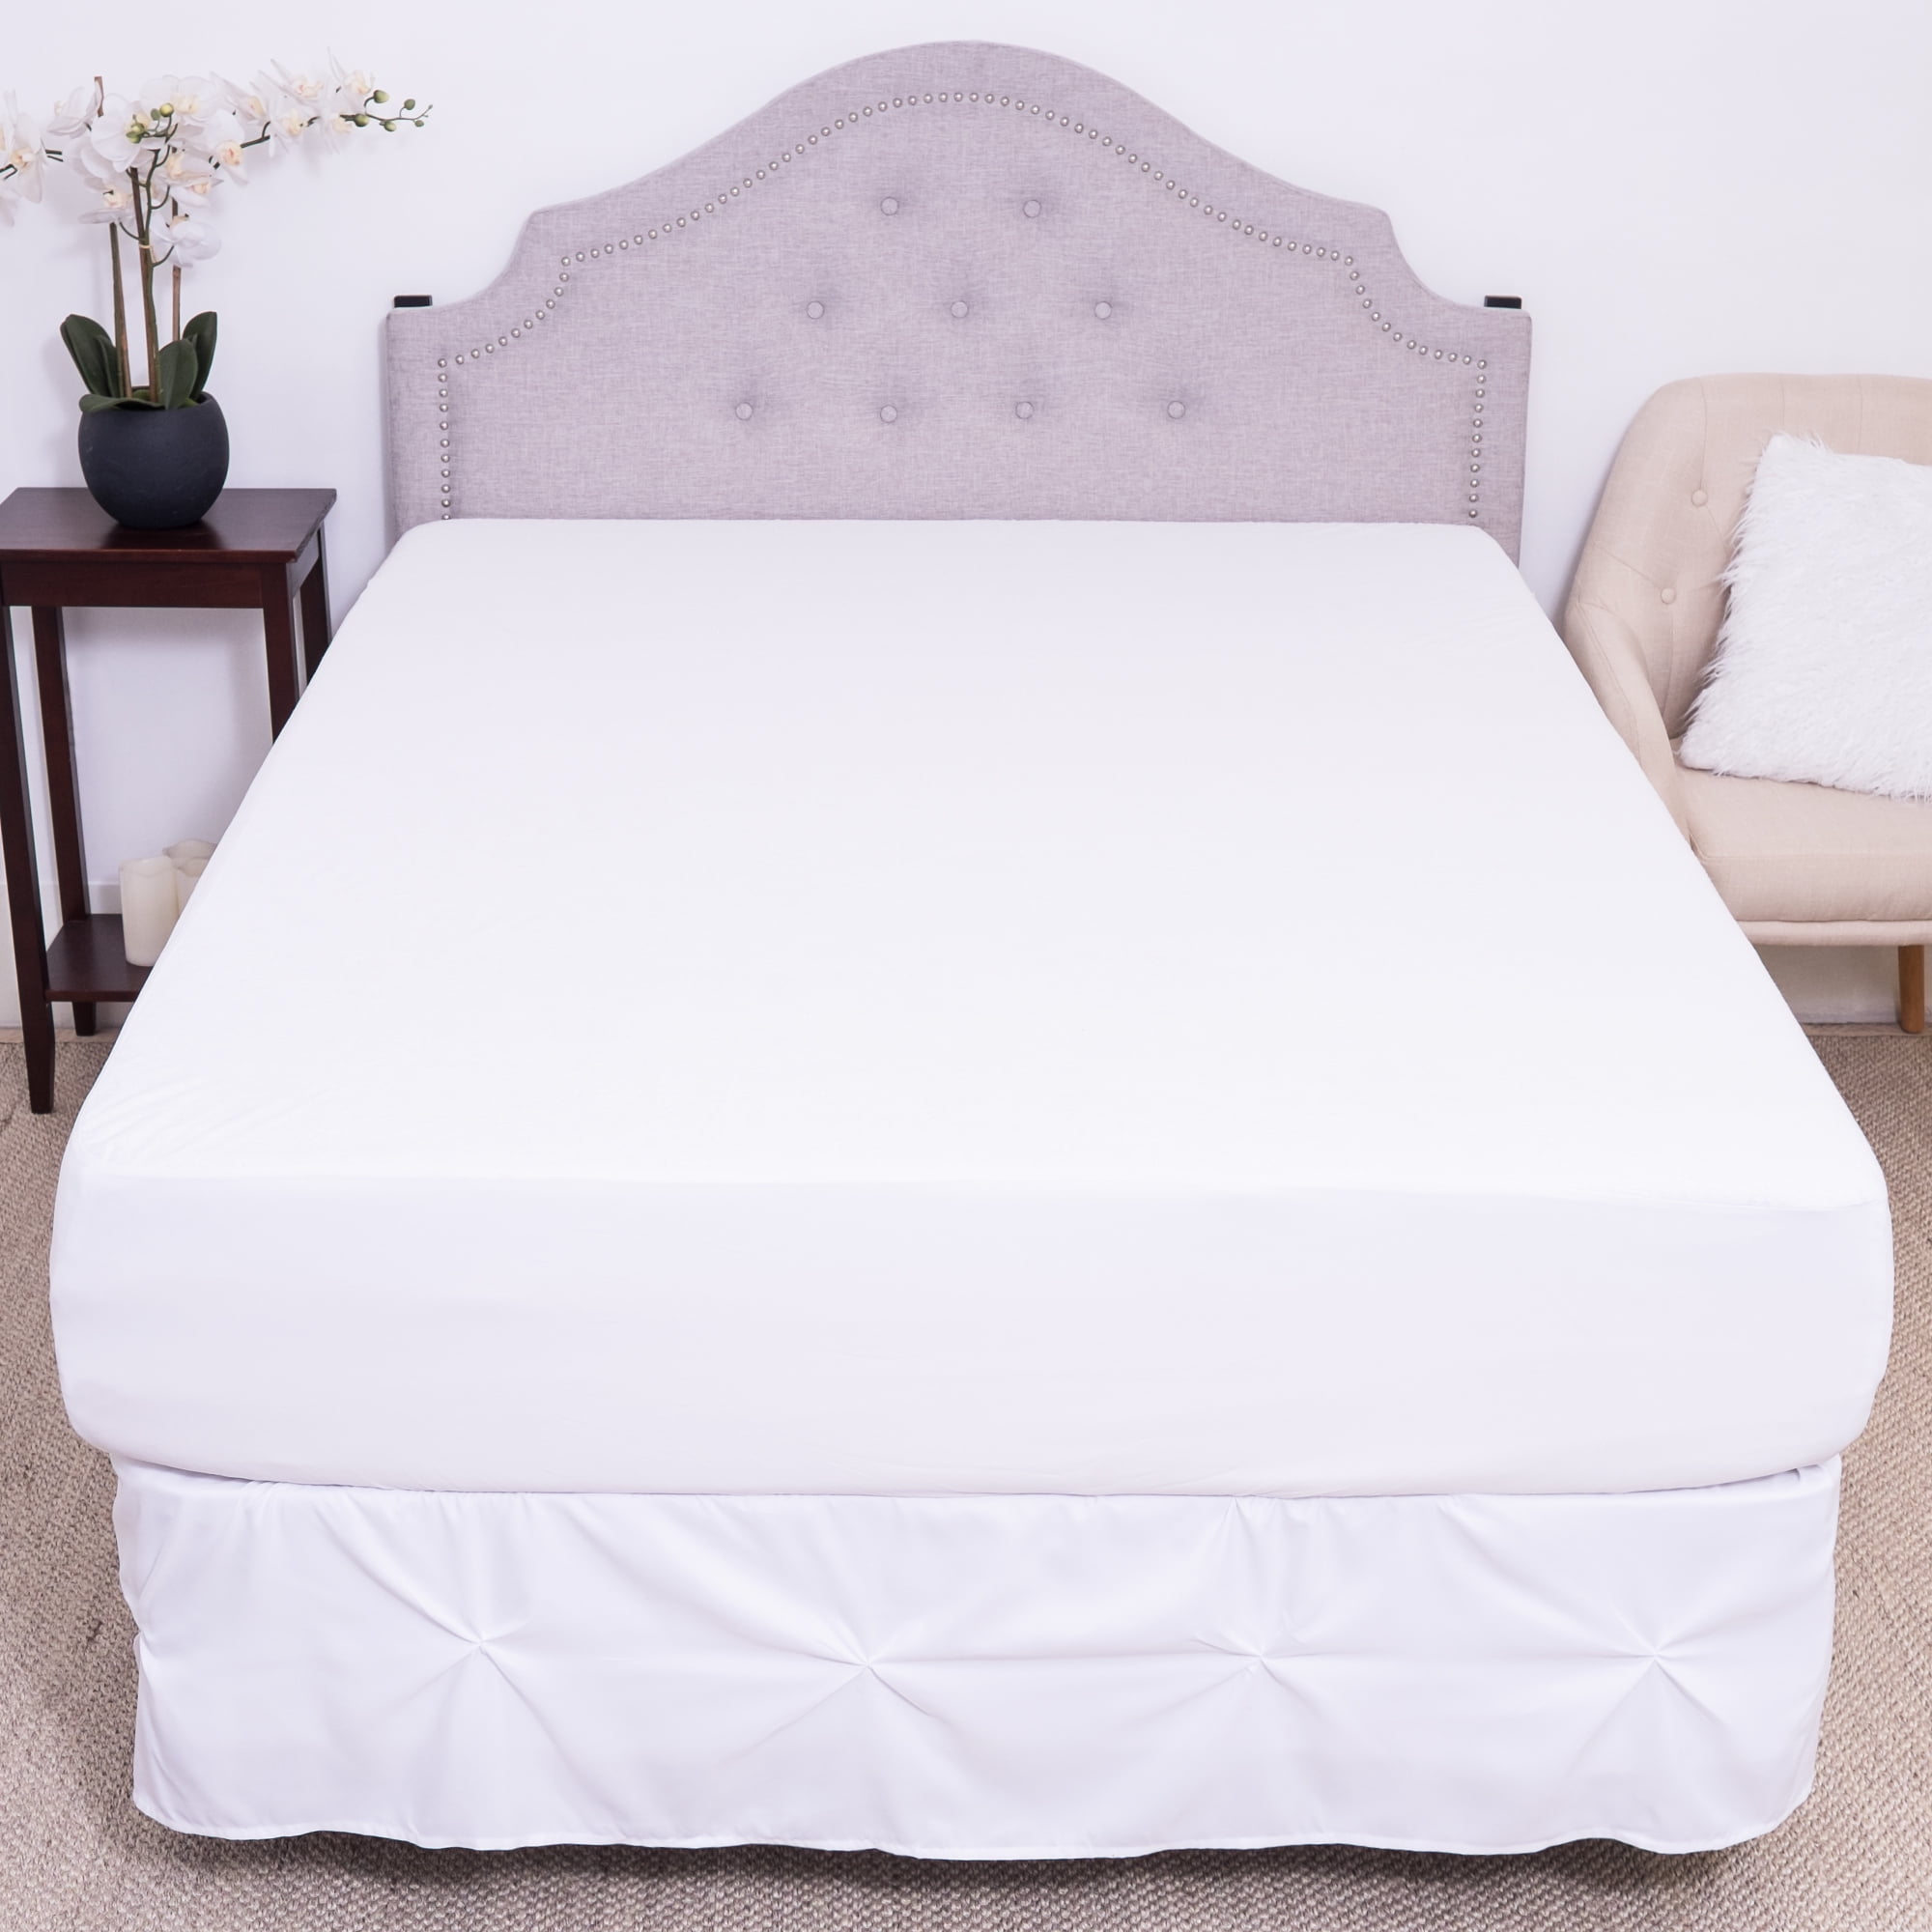 cotton bed mattress near me